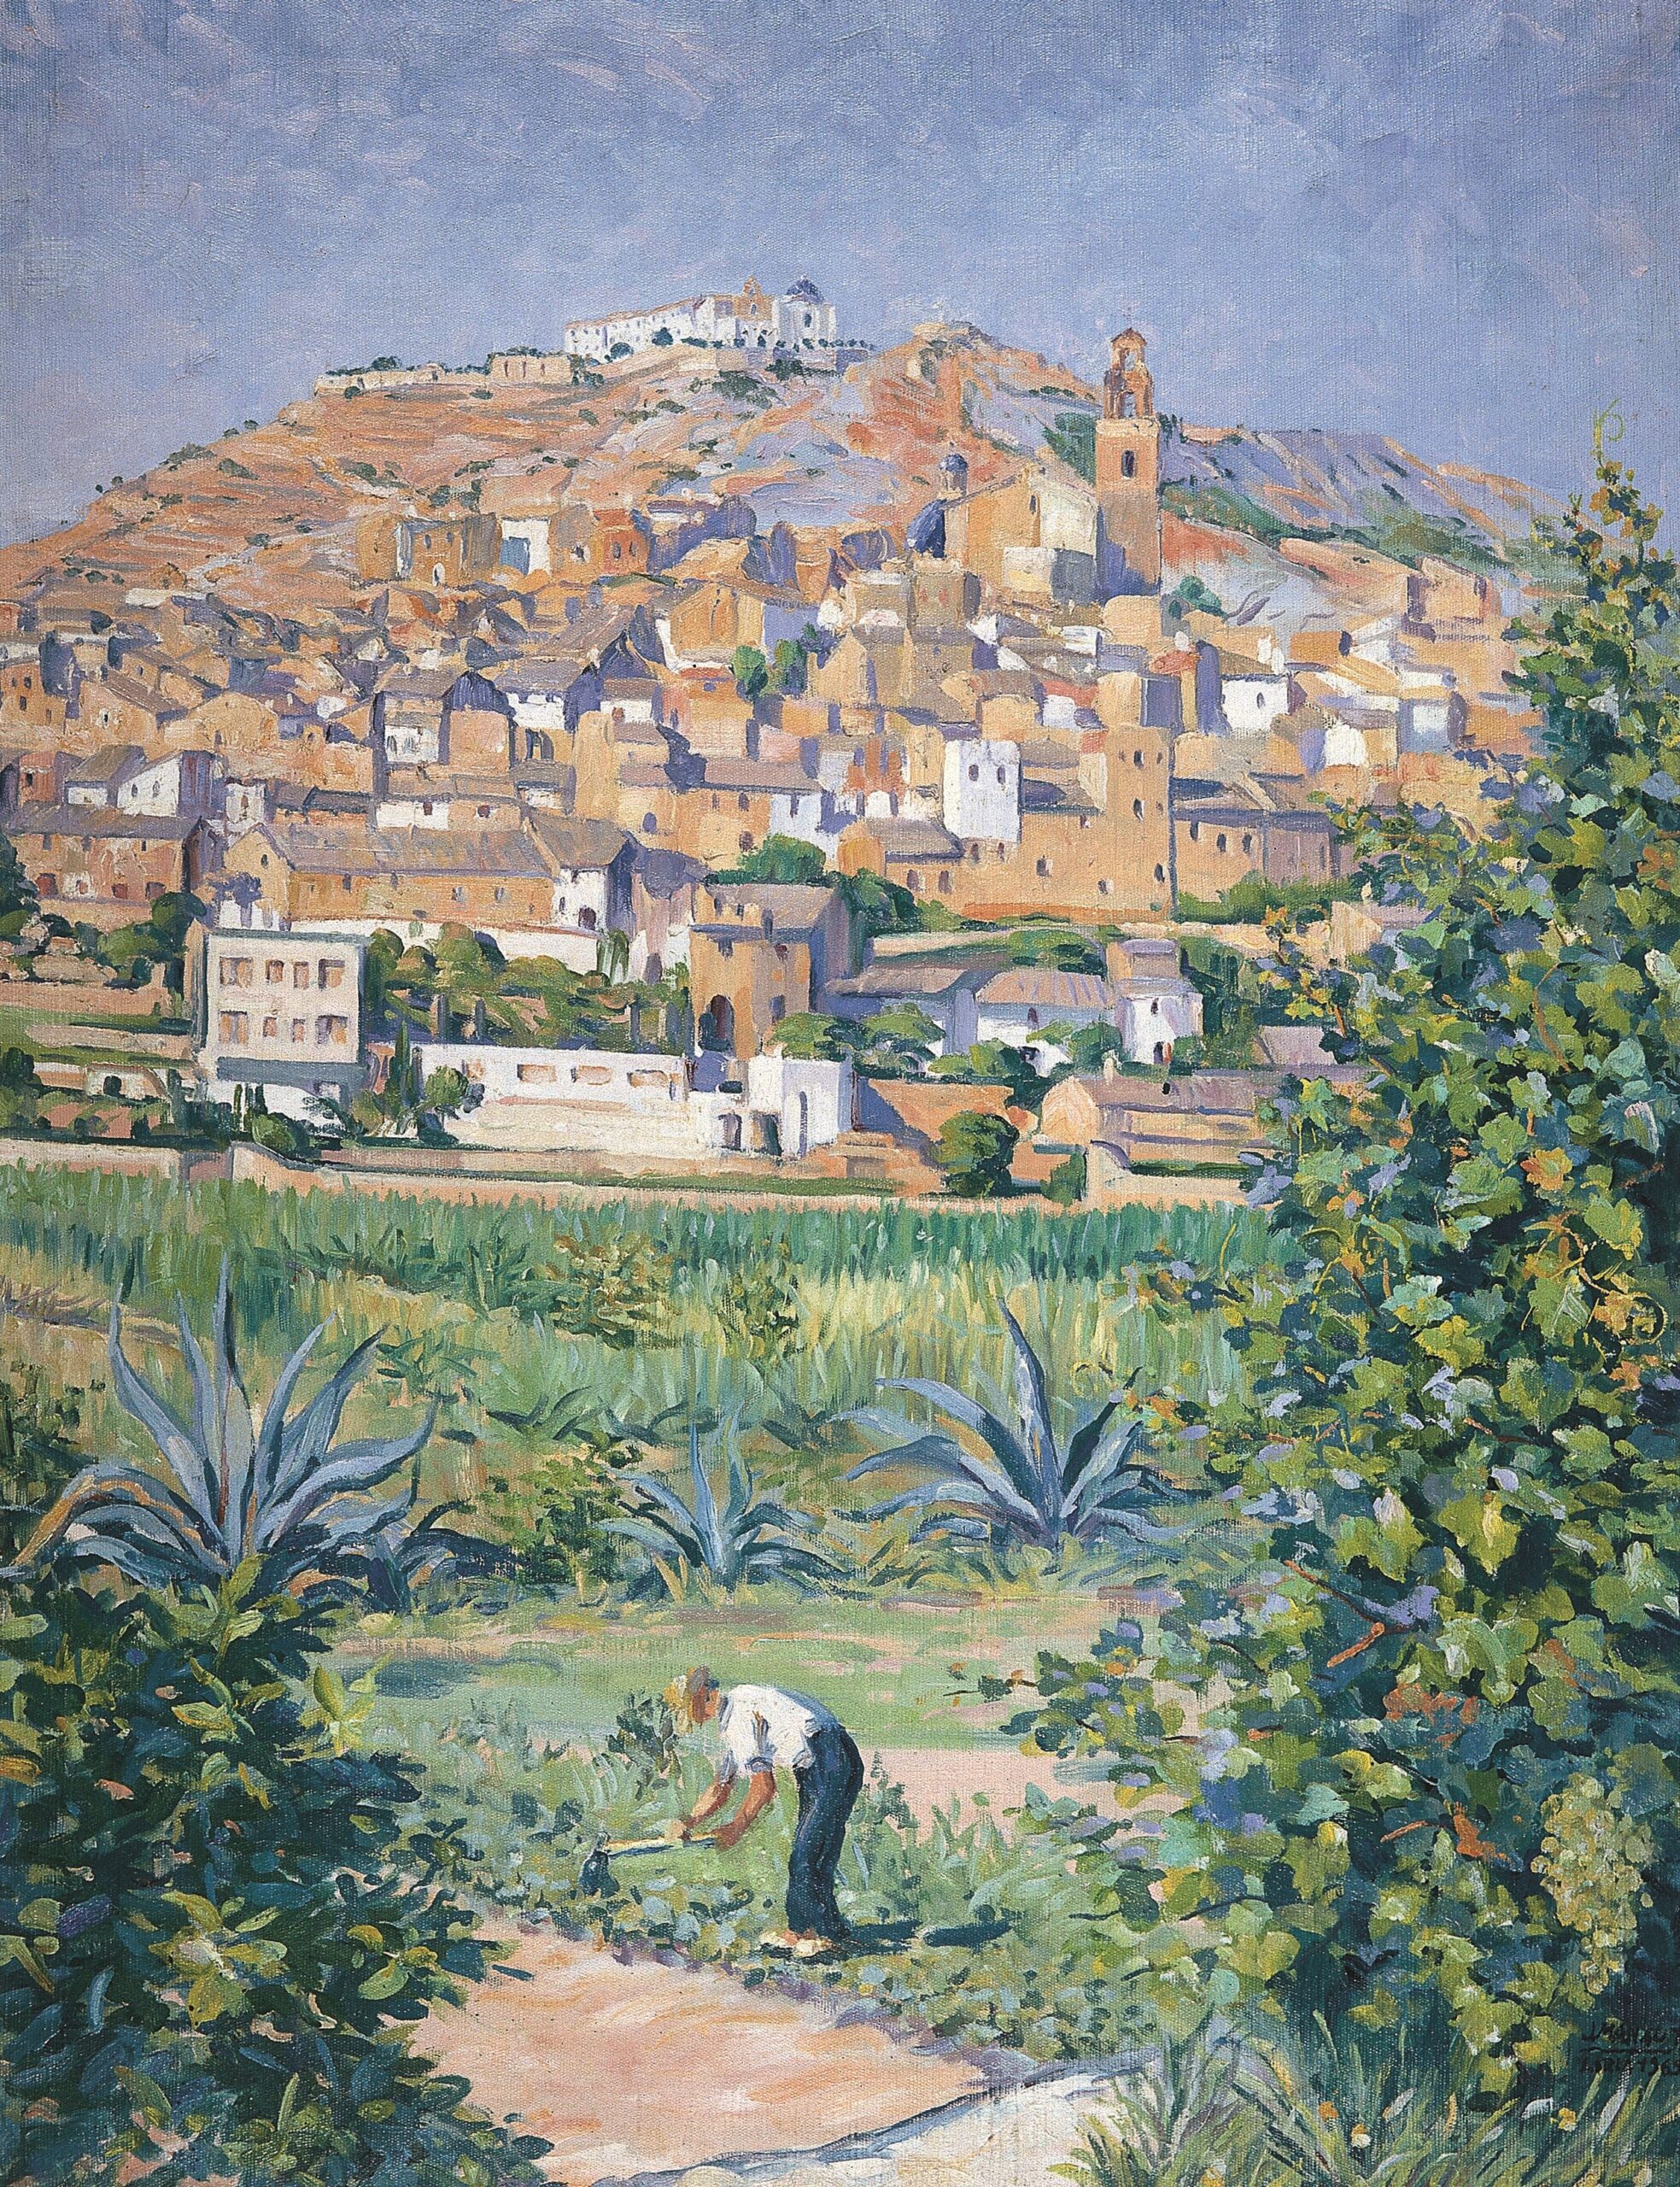 Pintura de José Manaut titulada Labrador y pueblo, Llíria (Valencia), 1963. Óleo sobre lienzo.